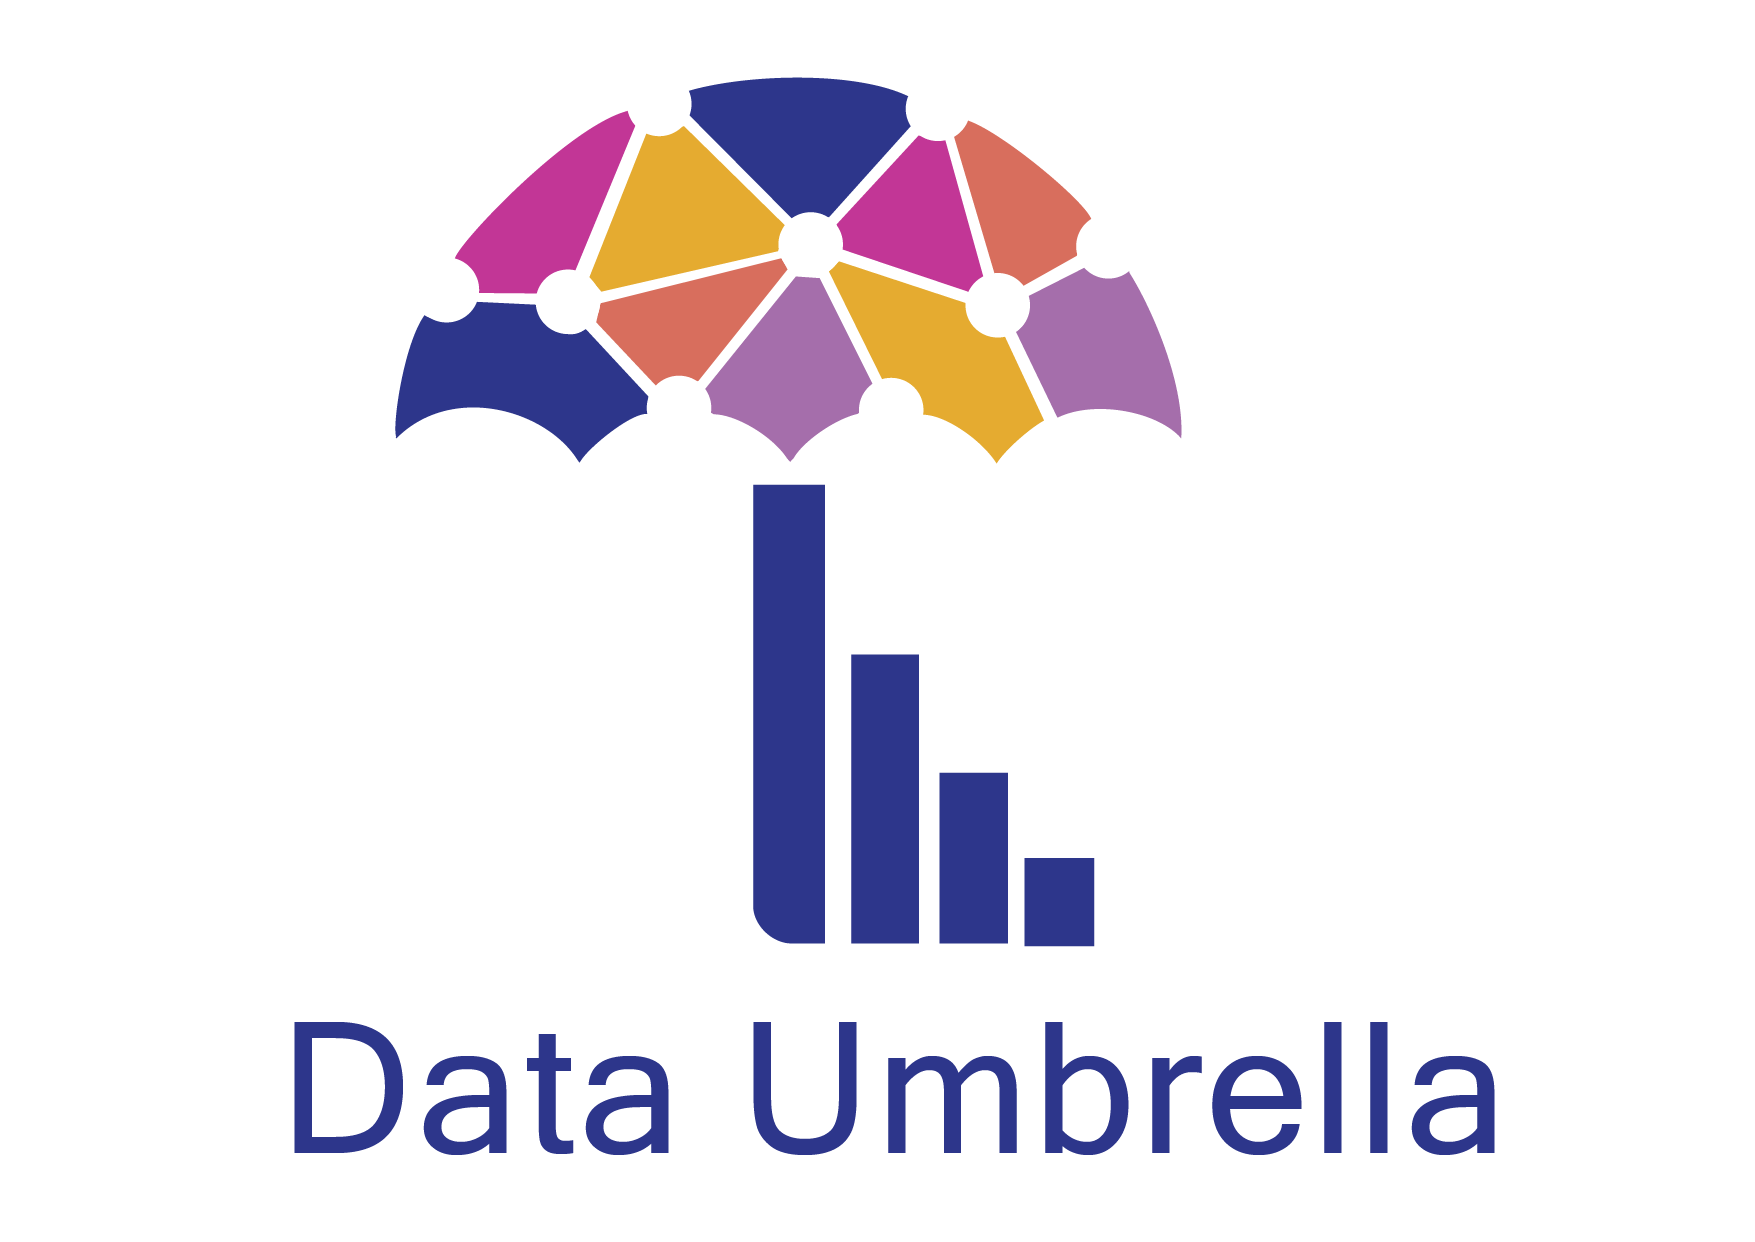 Data Umbrella